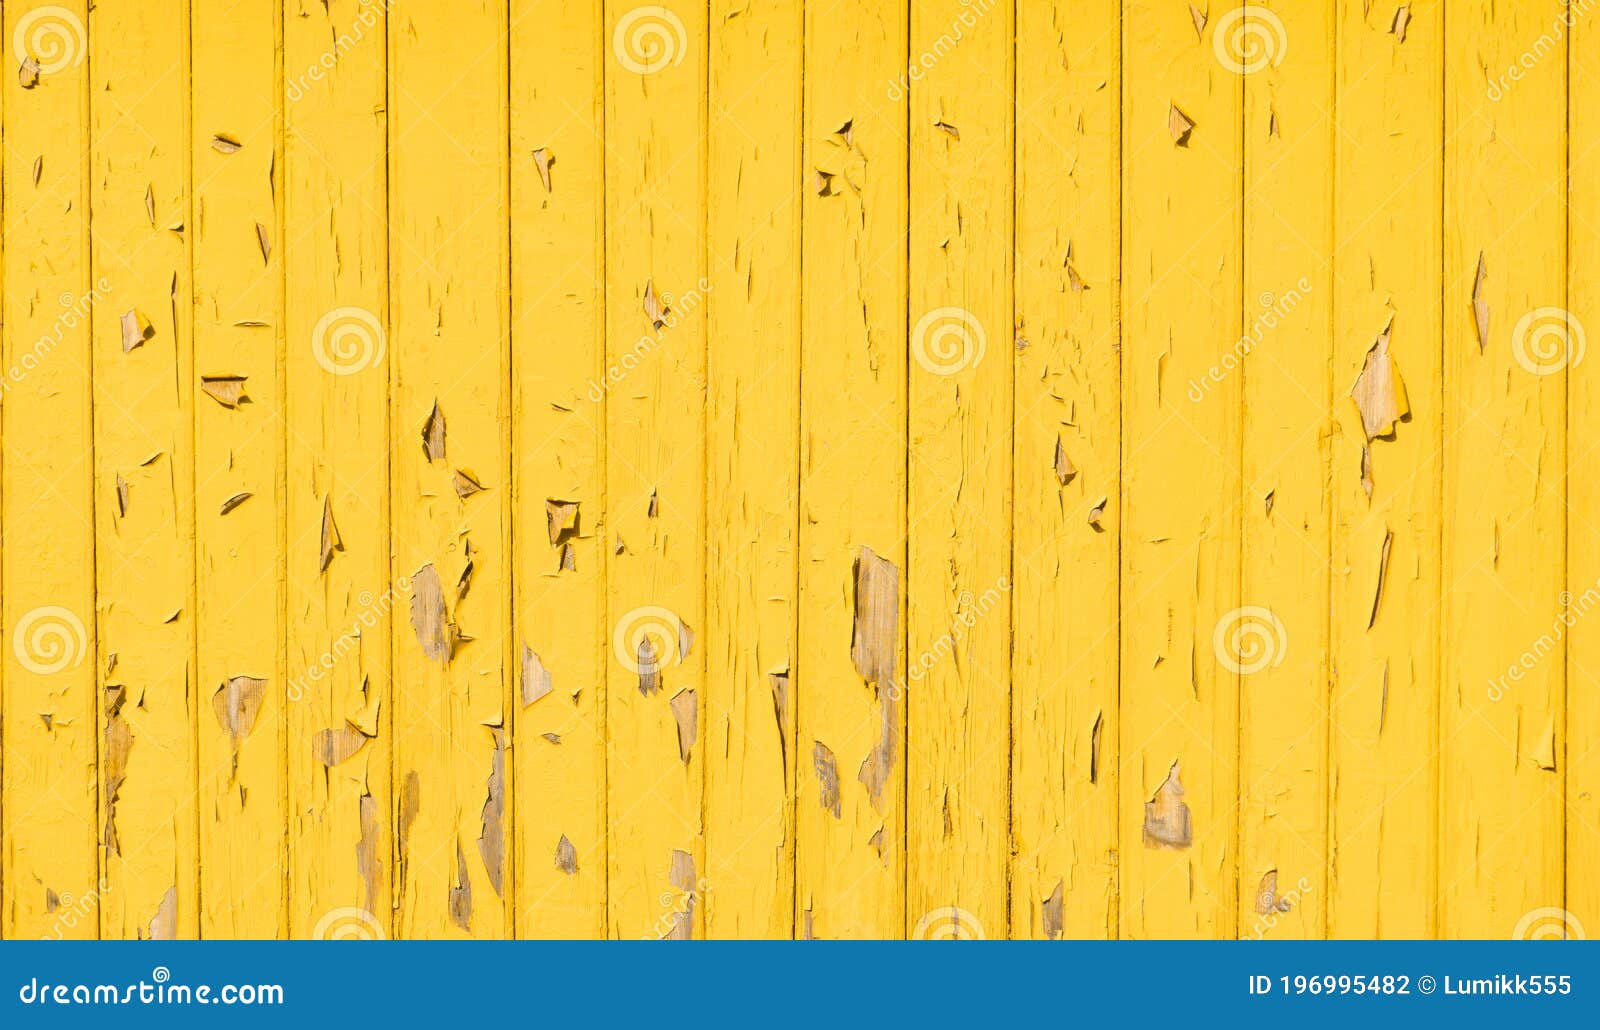 Tường gỗ đã qua sử dụng màu vàng tạo ra một cảnh quan nhiều cảm xúc và mang lại một vẻ đẹp rất riêng biệt. Sử dụng tường này một cách khéo léo, bạn sẽ có thể tạo ra những bức ảnh ấn tượng và độc đáo dành cho những dự án của mình. Hãy quan tâm đến nơi bạn chọn chụp bức ảnh để tạo ra hiệu ứng độc đáo.